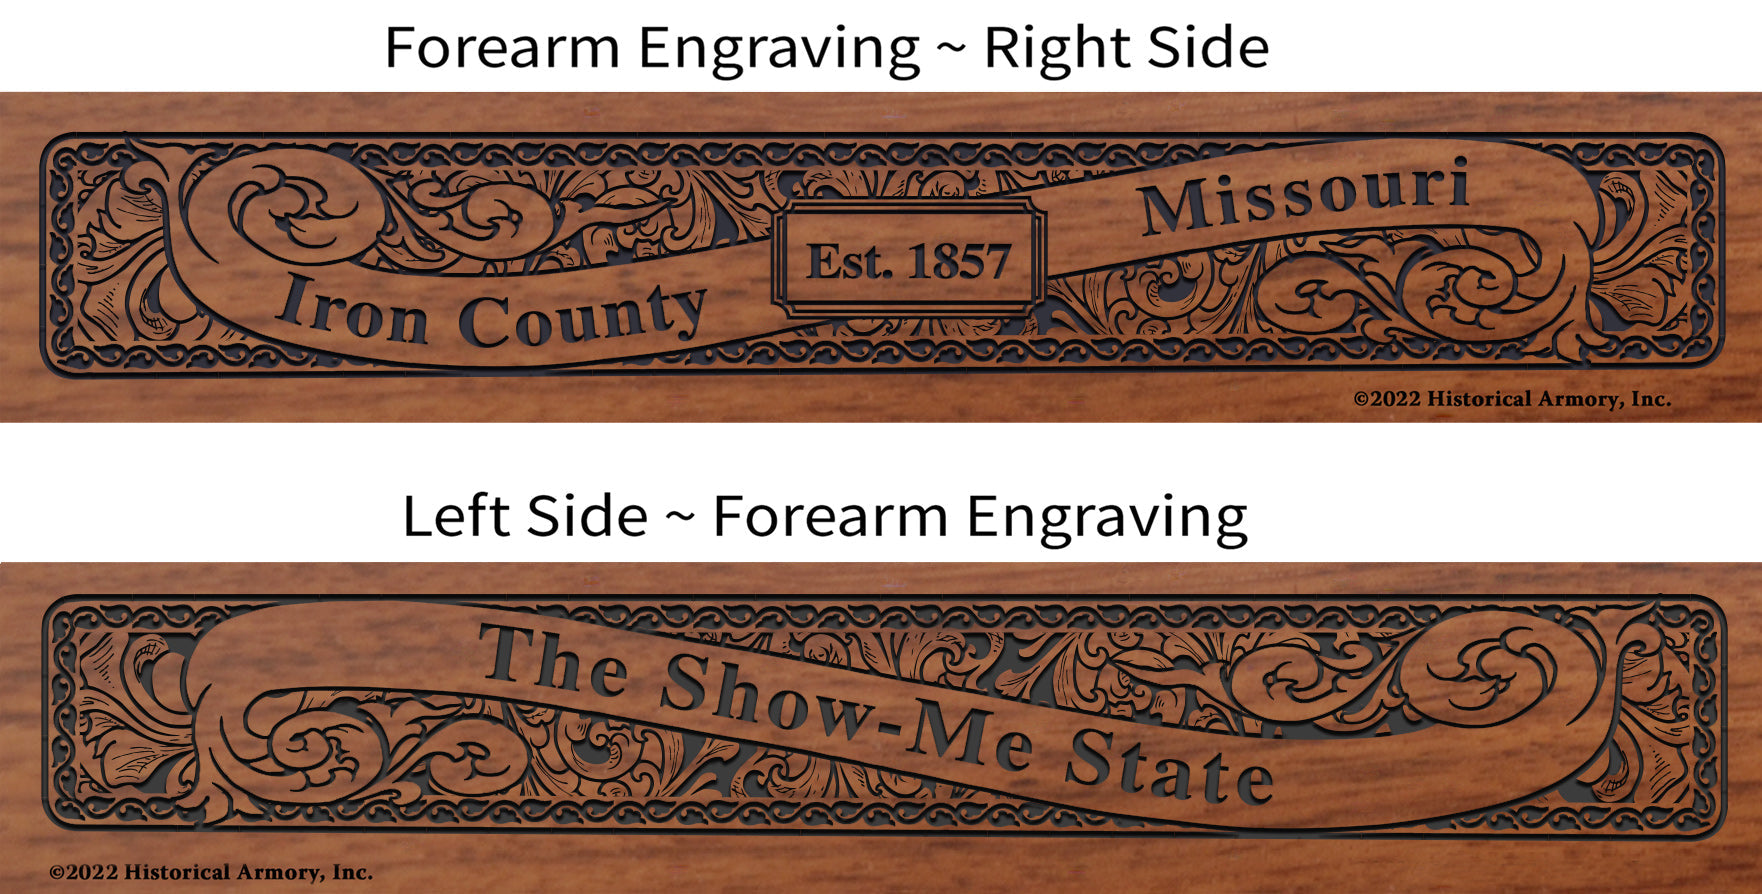 Iron County Missouri Engraved Rifle Forearm